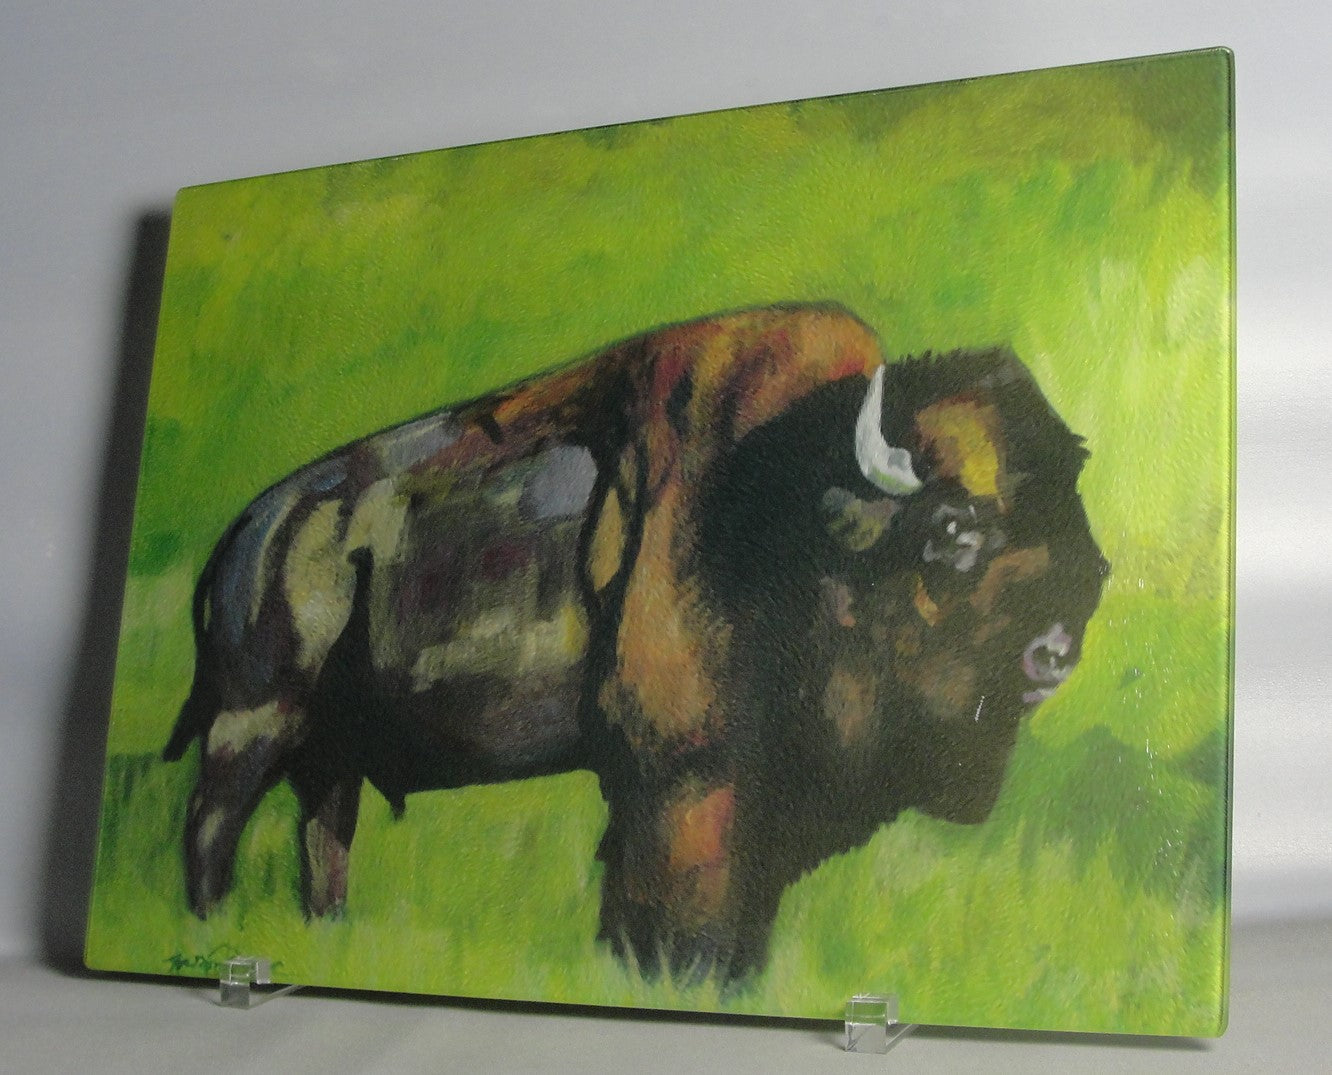 Cutting Board, Glass, Bull Bison (Buffalo),